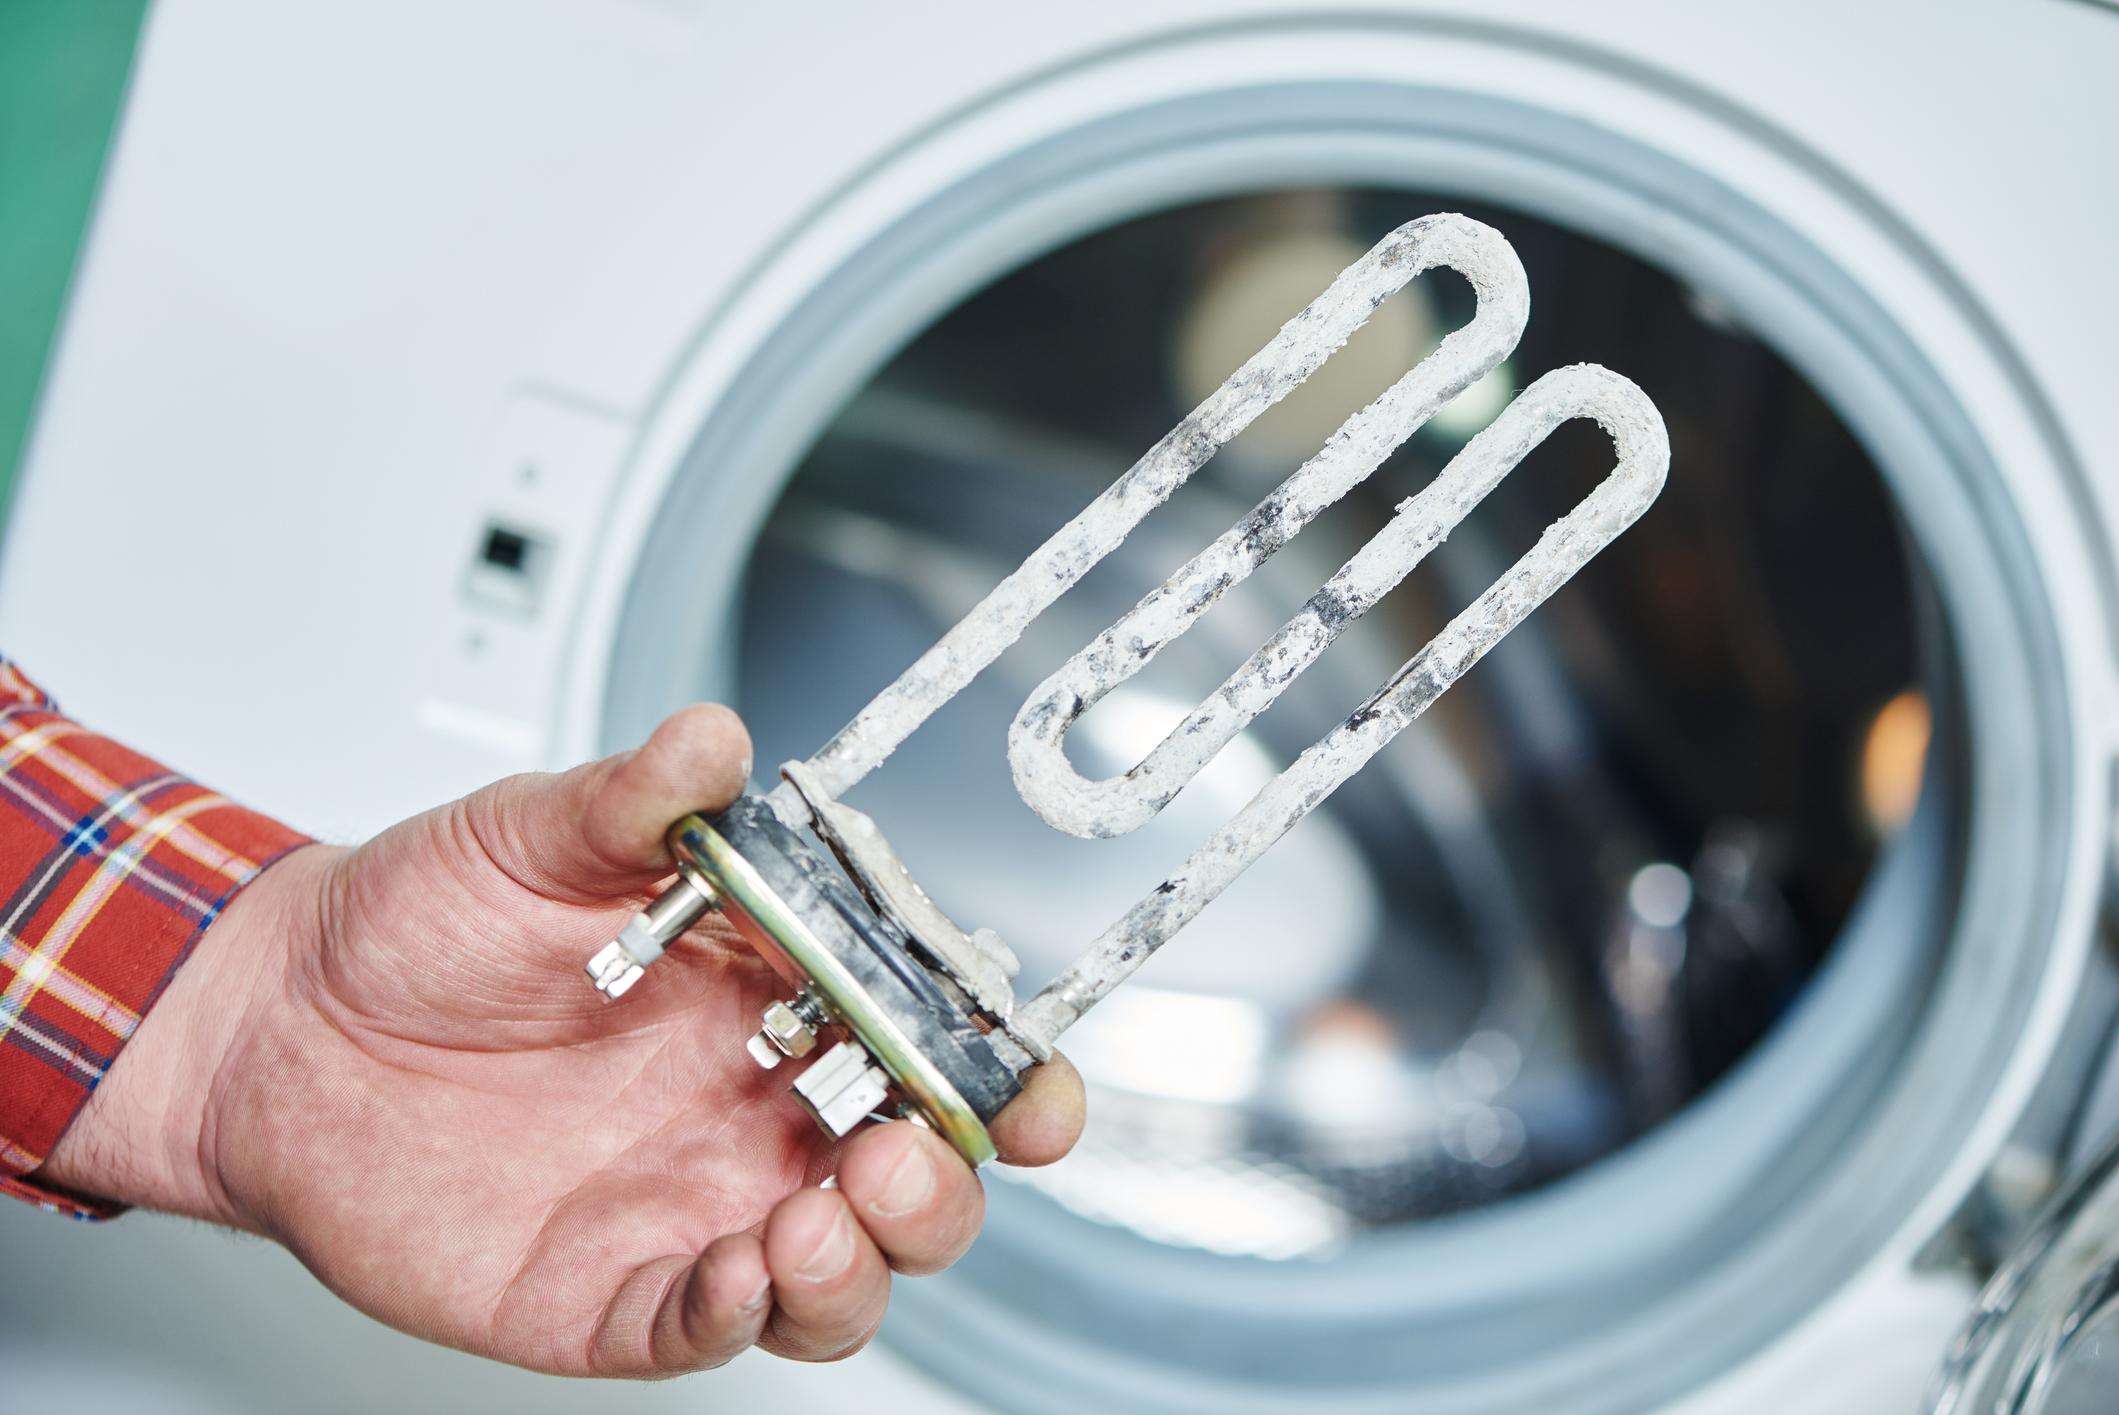 Wie viele Haushaltsgeräte hat eine verkalkte Waschmaschine eine geringere Funktionstüchtigkeit